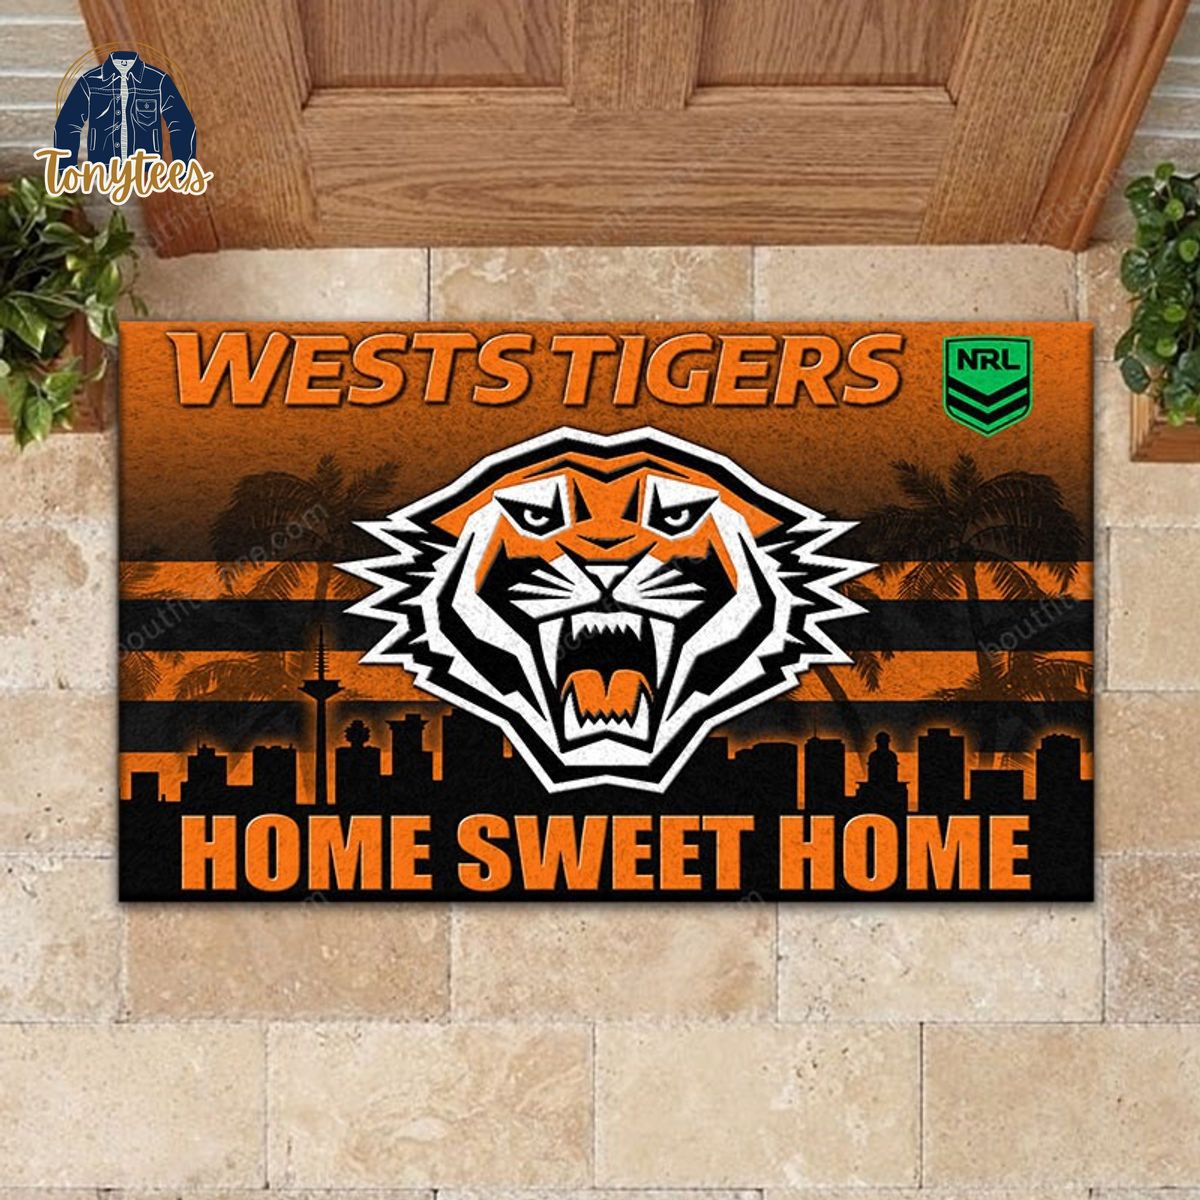 Wests Tigers Home Sweet Home Doormat